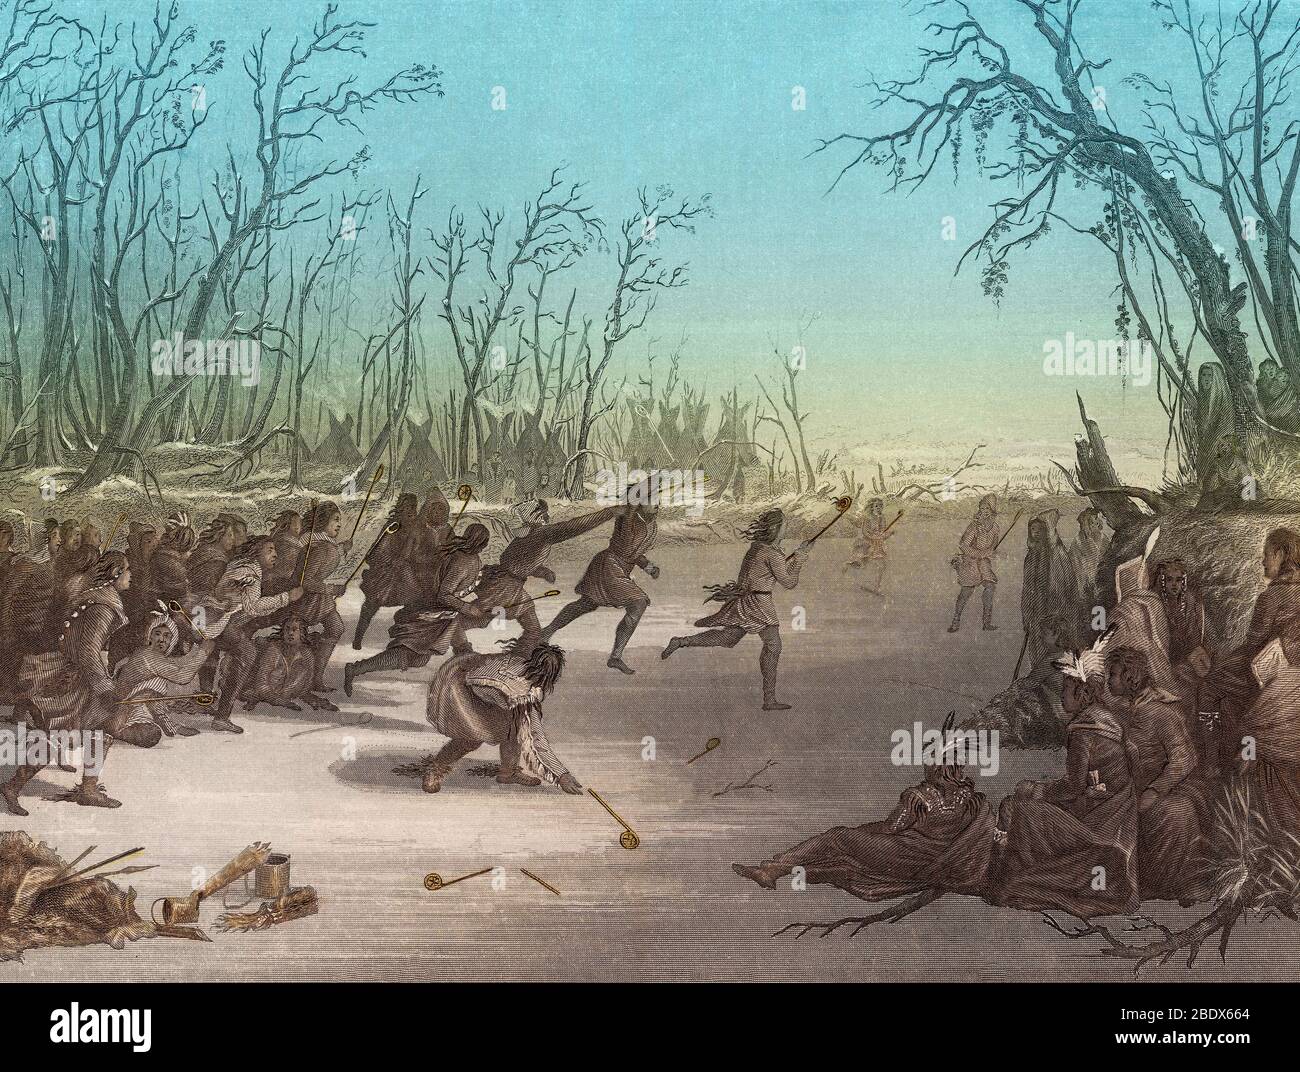 Indios Sioux nativos americanos jugando a Ball Game Foto de stock